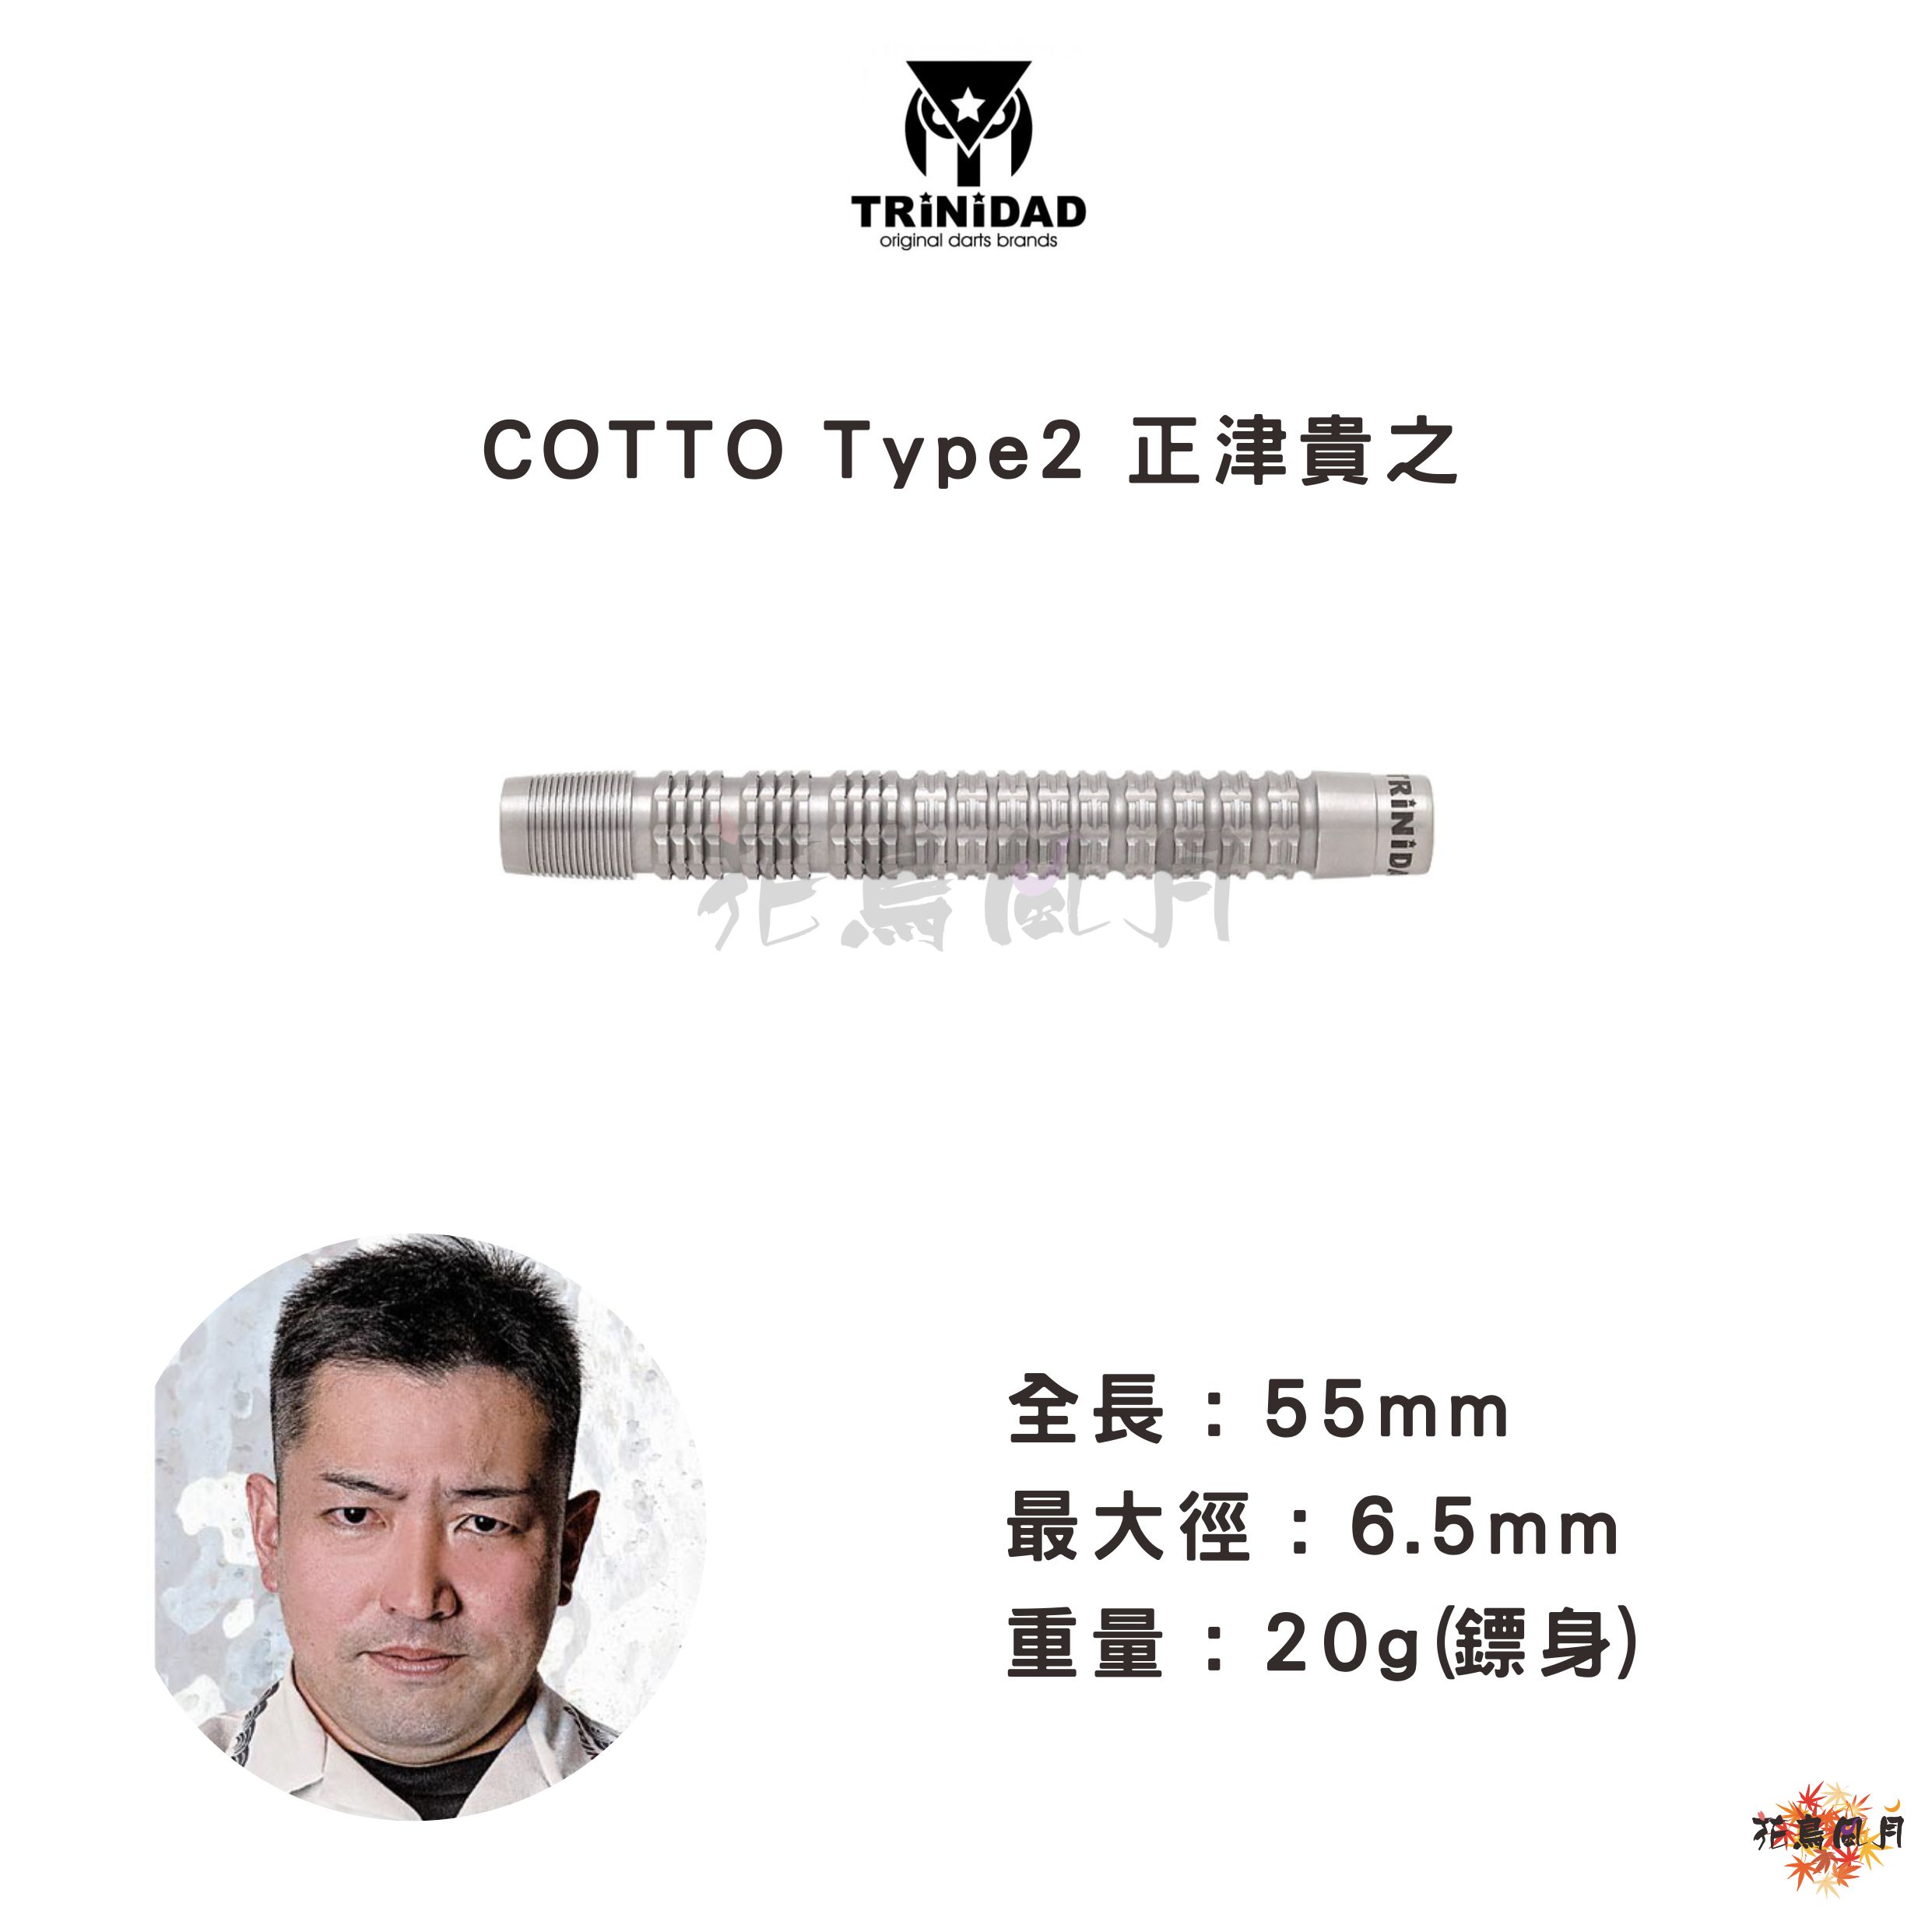 TRiNiDAD-PROトリニダードプロ-COTTO-Type2コット-タイプ2-2BA-正津貴之選手モデル.jpg